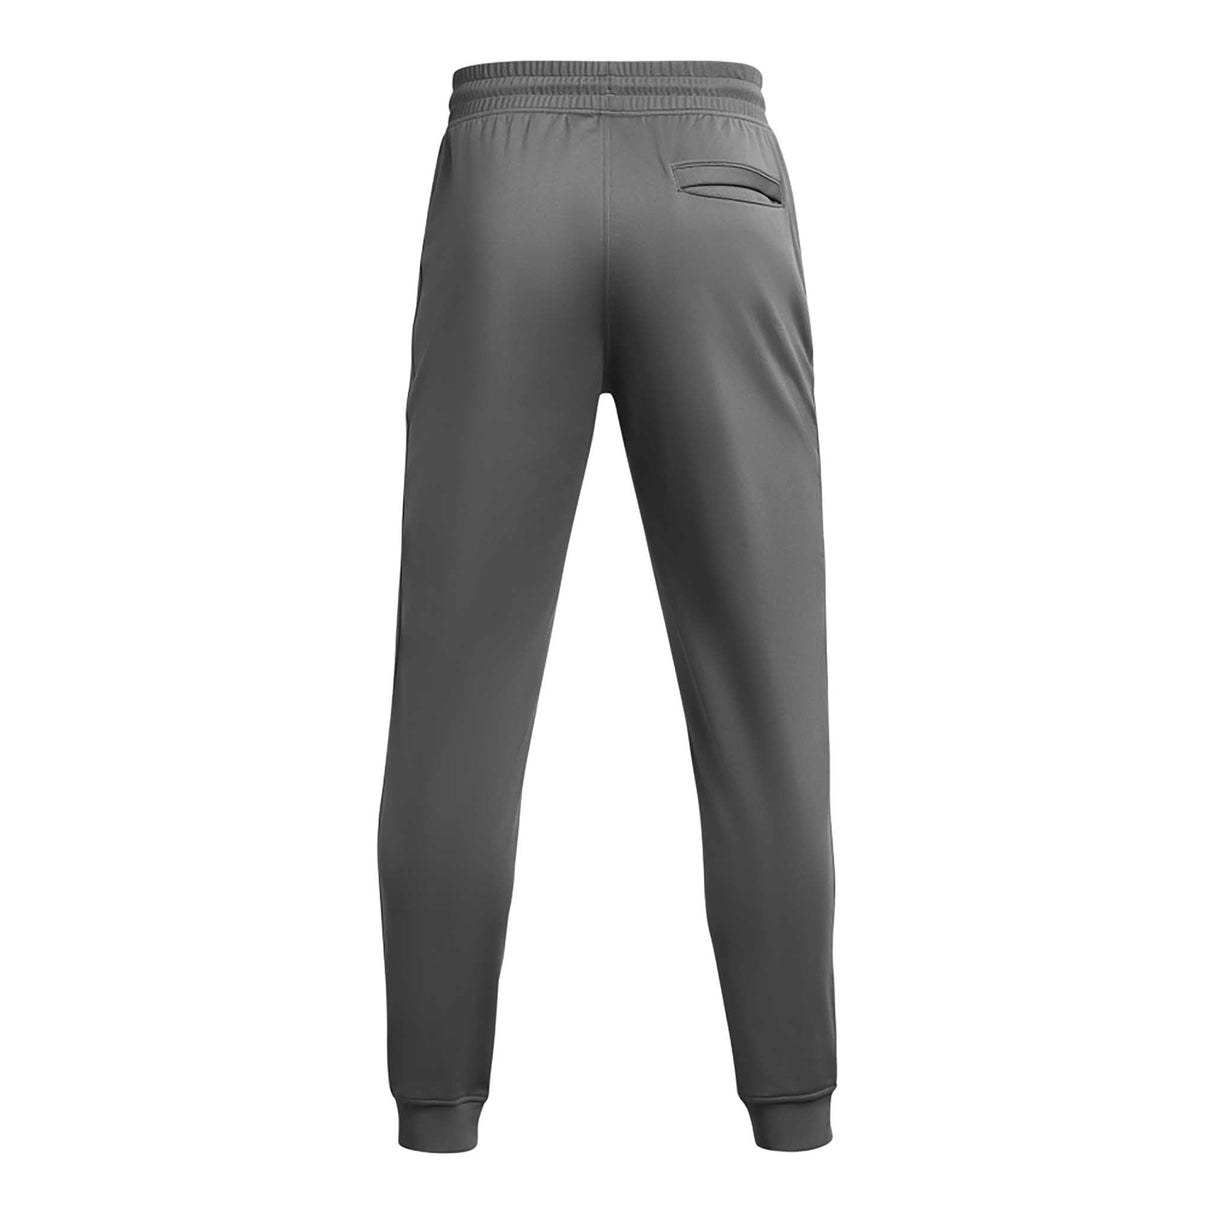 UA Sportstyle pantalon de jogging homme dos - Castlerock / Noir